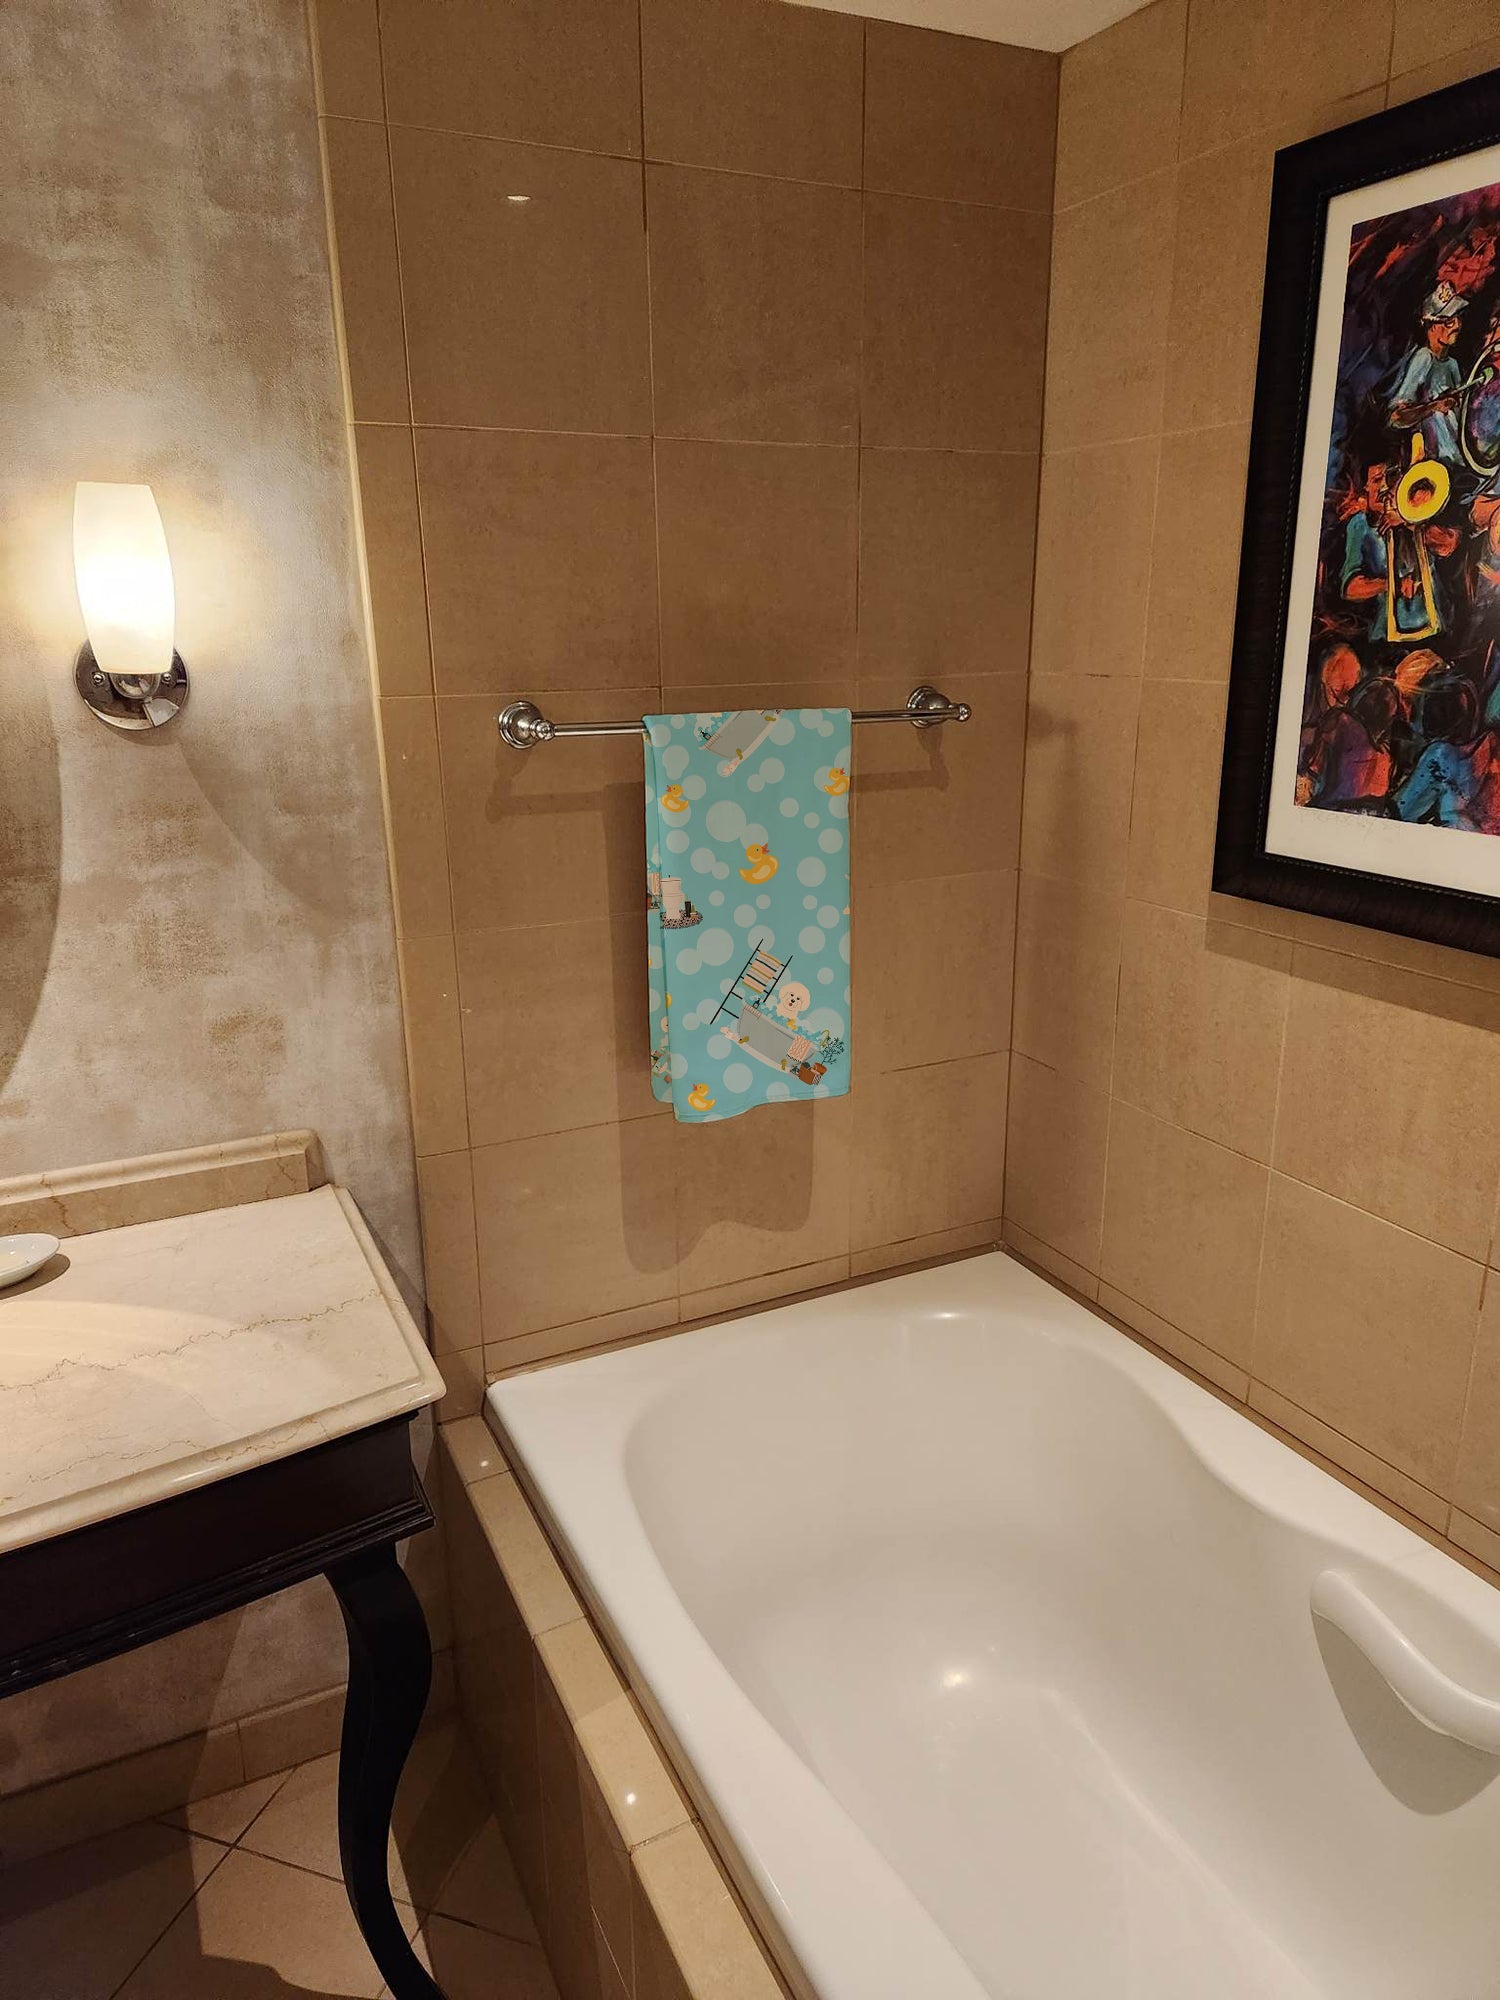 Buy this Bichon Frise in Bathtub Bath Towel Large